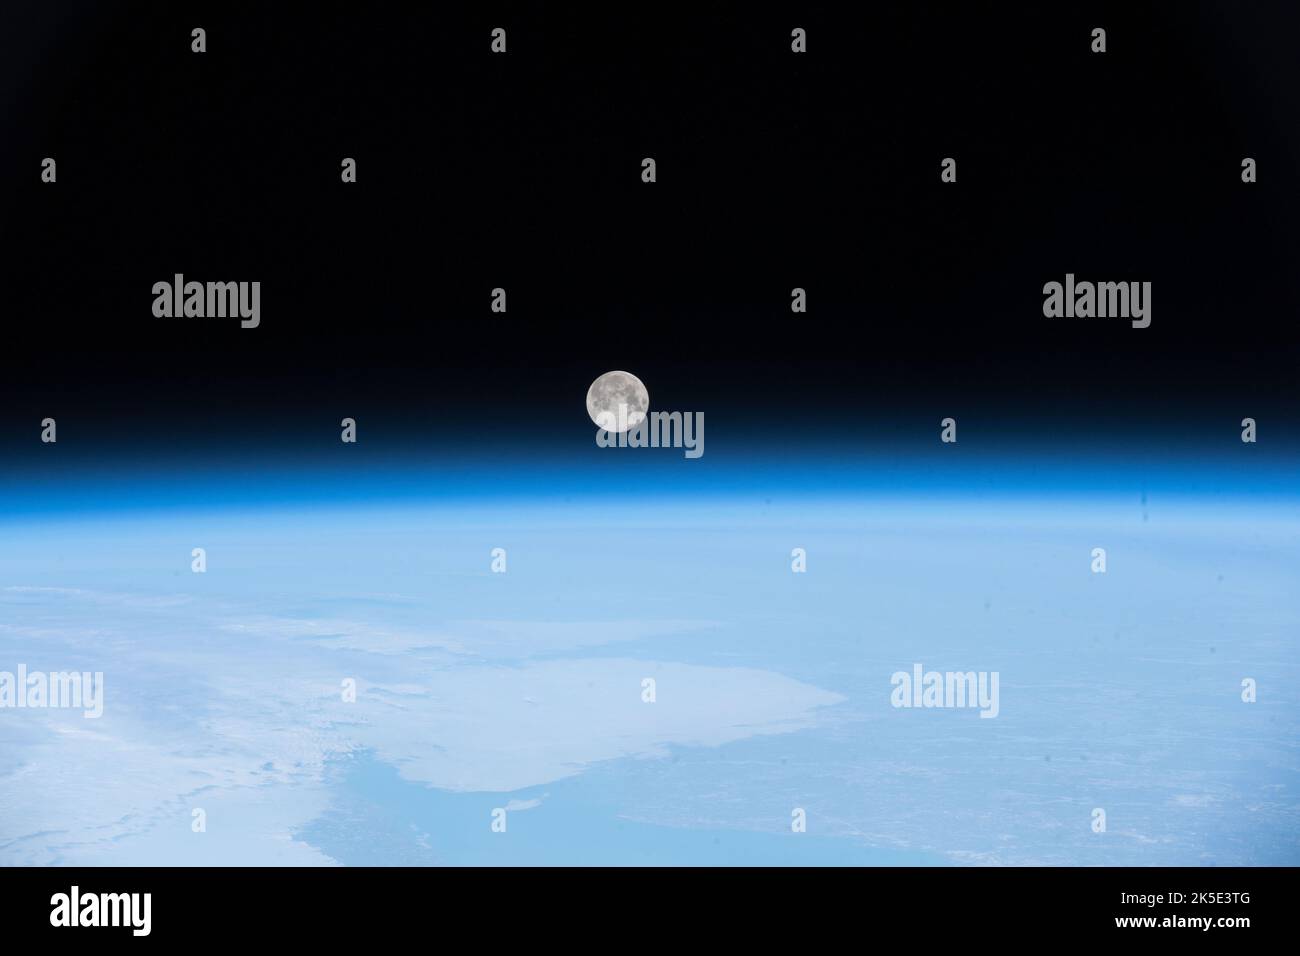 Luna piena su Terranova. L'equipaggio della Stazione spaziale Internazionale ha scattato questa immagine della Luna piena il 30 aprile 2018, mentre la stazione orbitava al largo della costa di Terranova, Canada. La stazione orbita 220 miglia, o 354km, sopra la Terra, completando un viaggio intorno al globo ogni 92 minuti. Navigando a 17.200 miglia, o 27.700 km all'ora, gli astronauti sperimentano 15 o 16 albe e tramonti ogni giorno. Una versione ottimizzata e ottimizzata digitalmente di un'immagine NASA. Credito: NASA Foto Stock